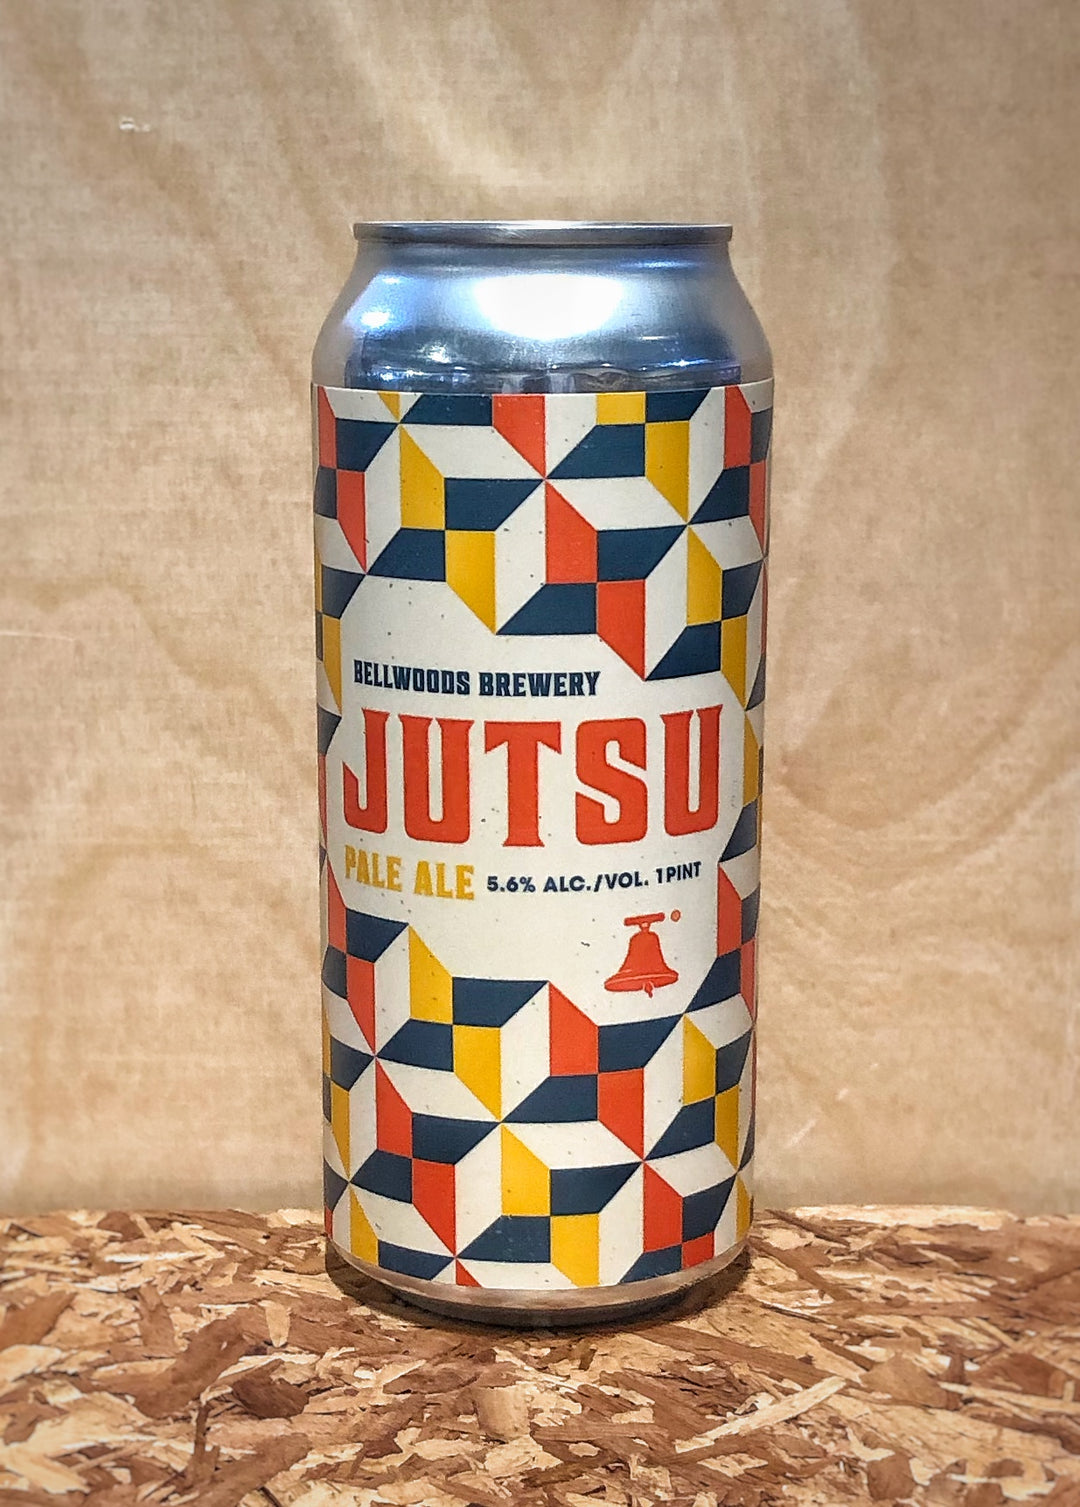 Bellwoods Brewery 'Jutsu' Pale Ale (Toronto, Ontario)